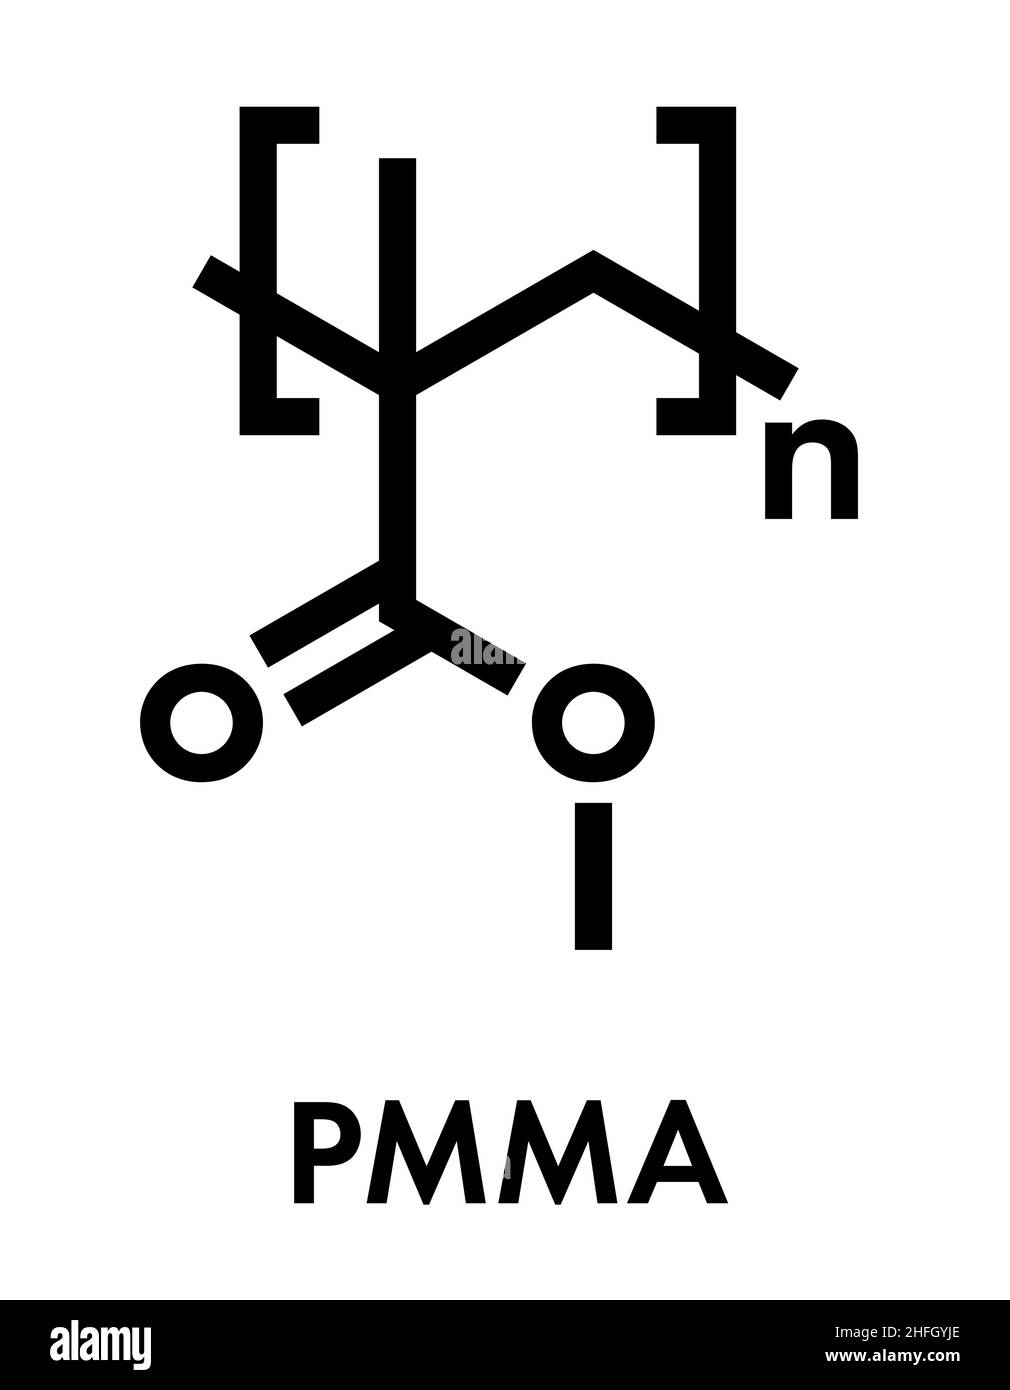 Vetro acrilico o poli(metilmetacrilato), struttura chimica. PMMA è il componente principale della vernice acrilica (lattice) e del vetro acrilico. Formul scheletrico Illustrazione Vettoriale